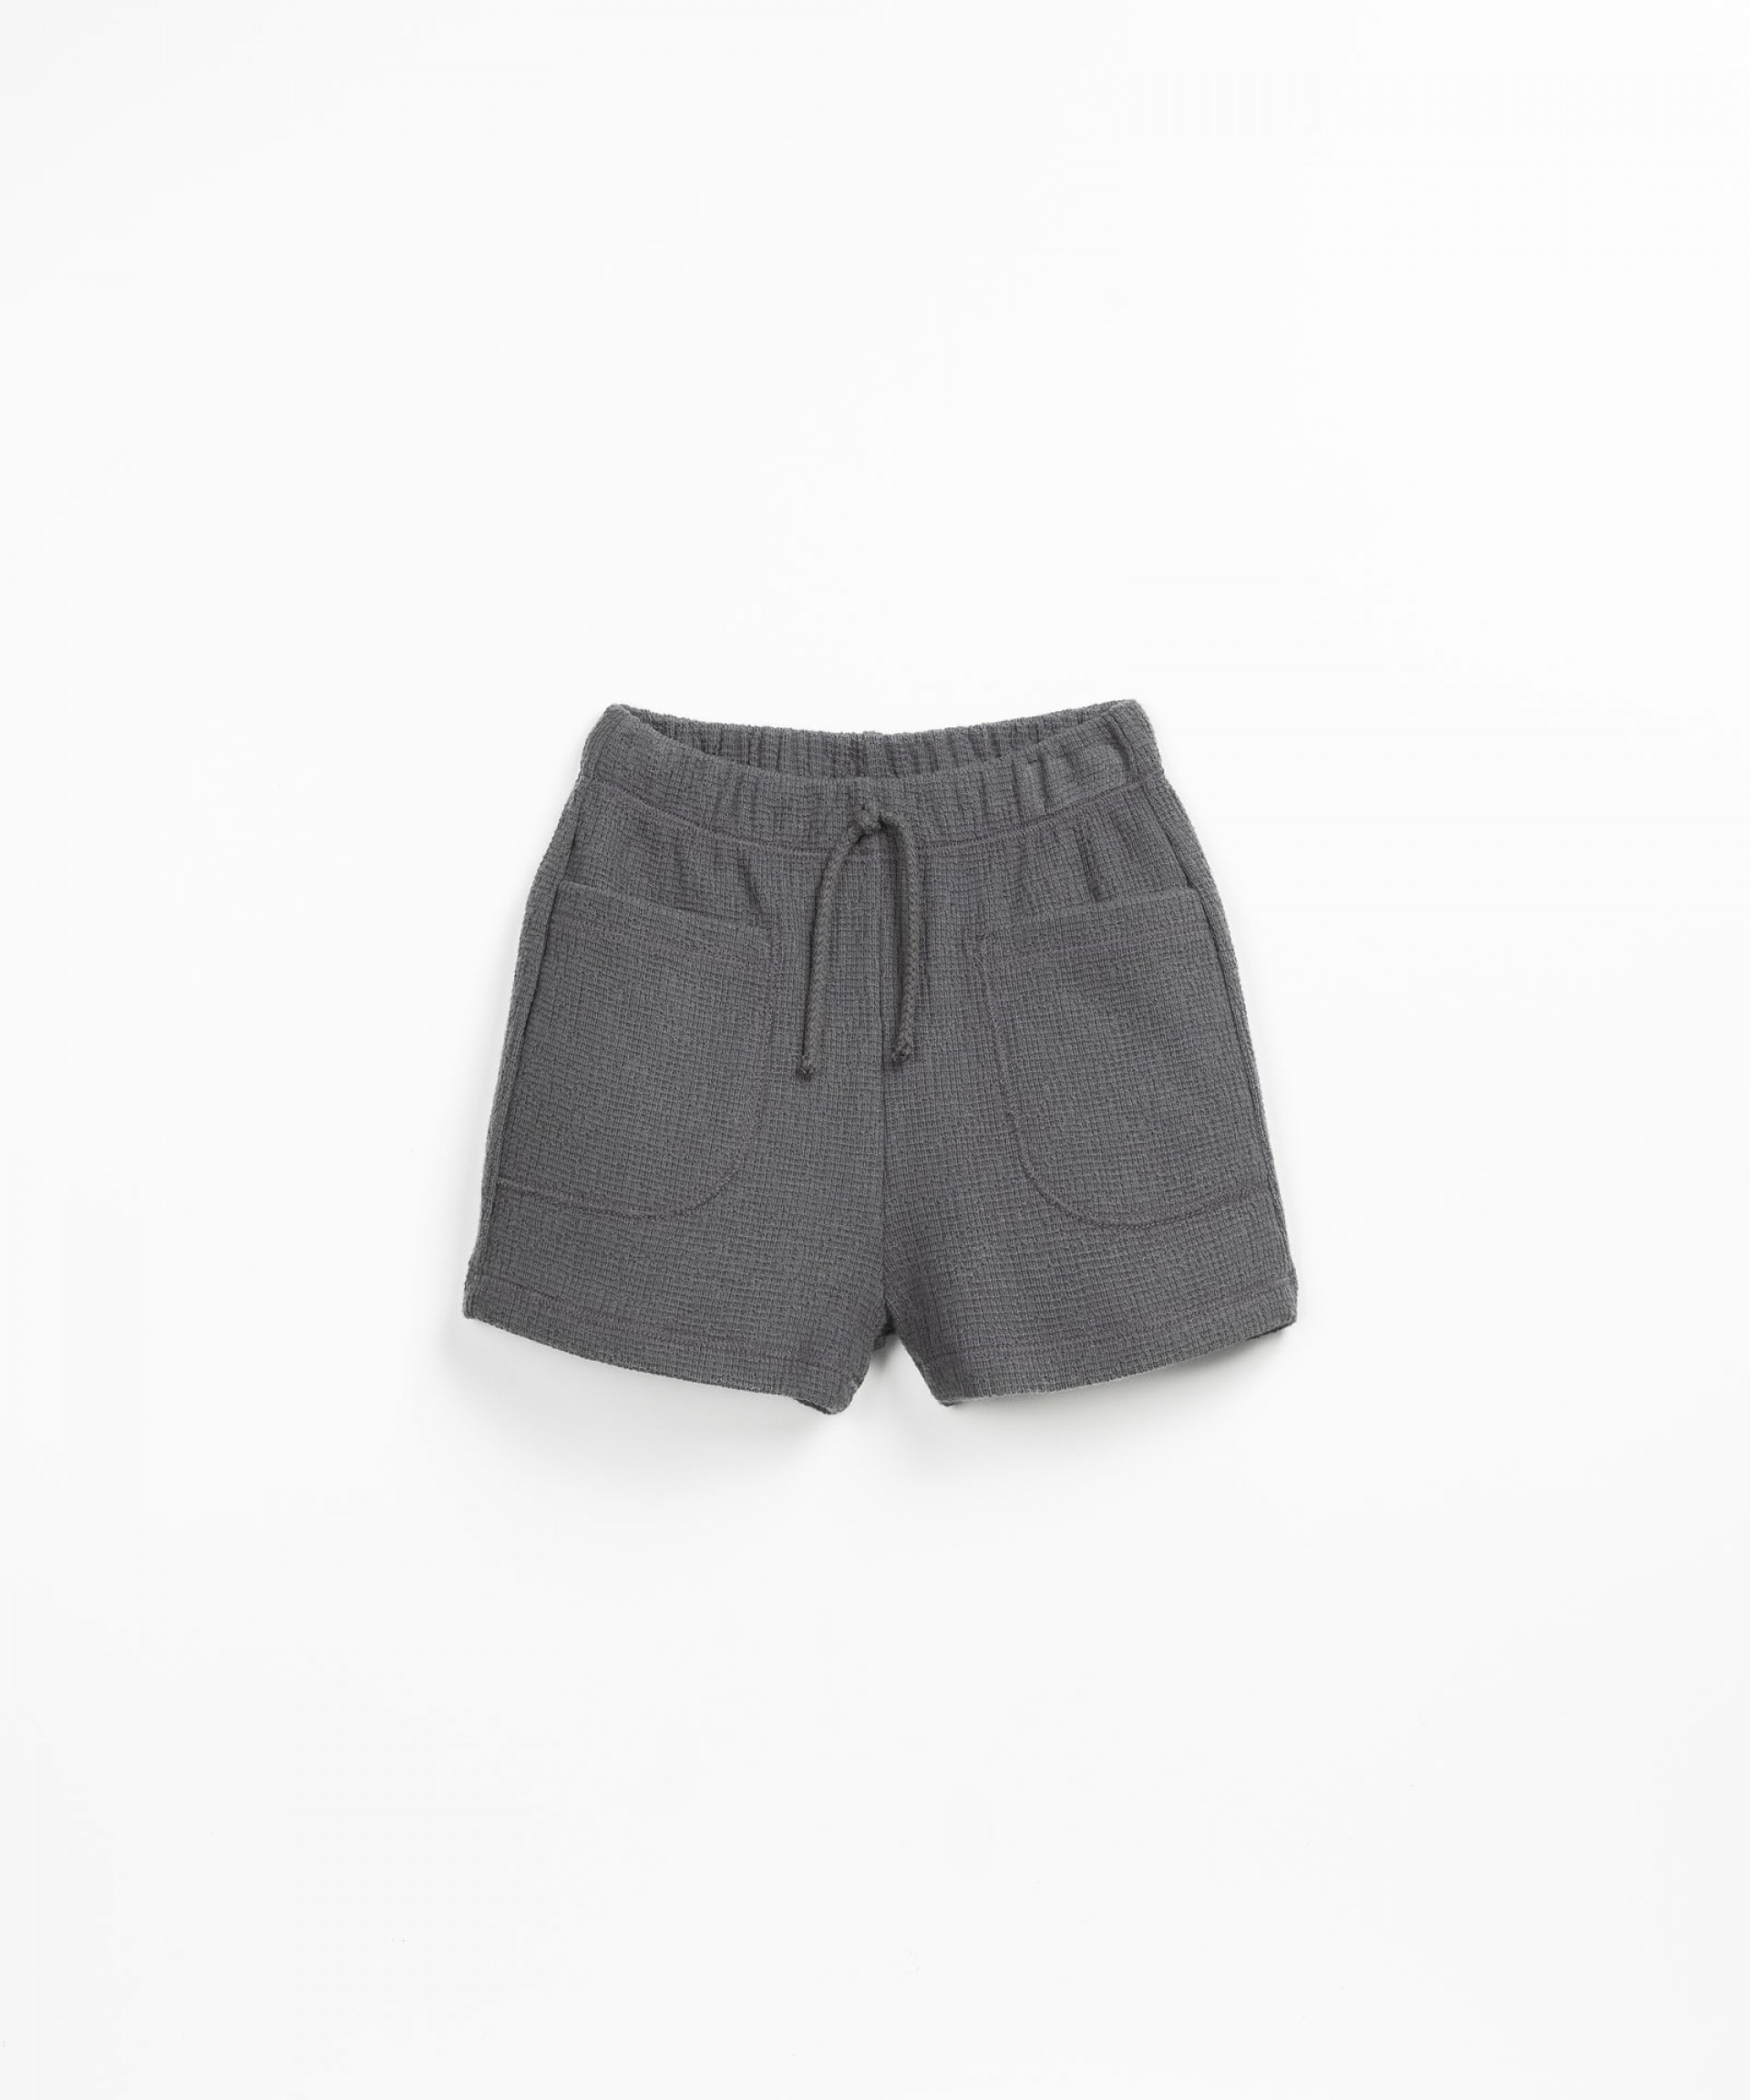 Pantaln corto con modal | Textile Art